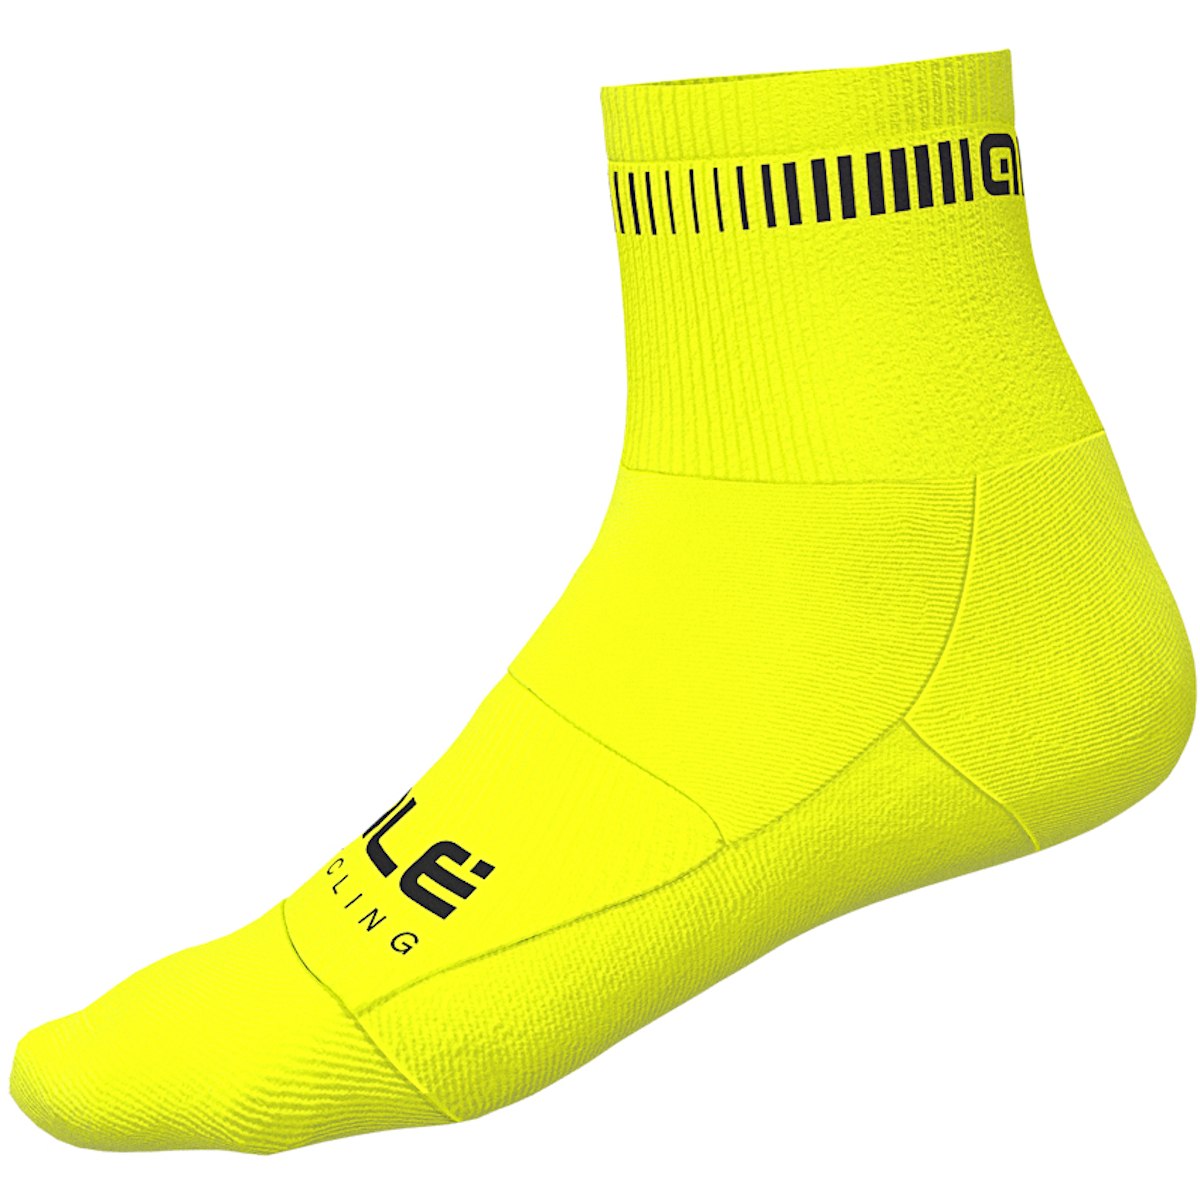 Produktbild von Alé Logo Socken - fluo yellow/black